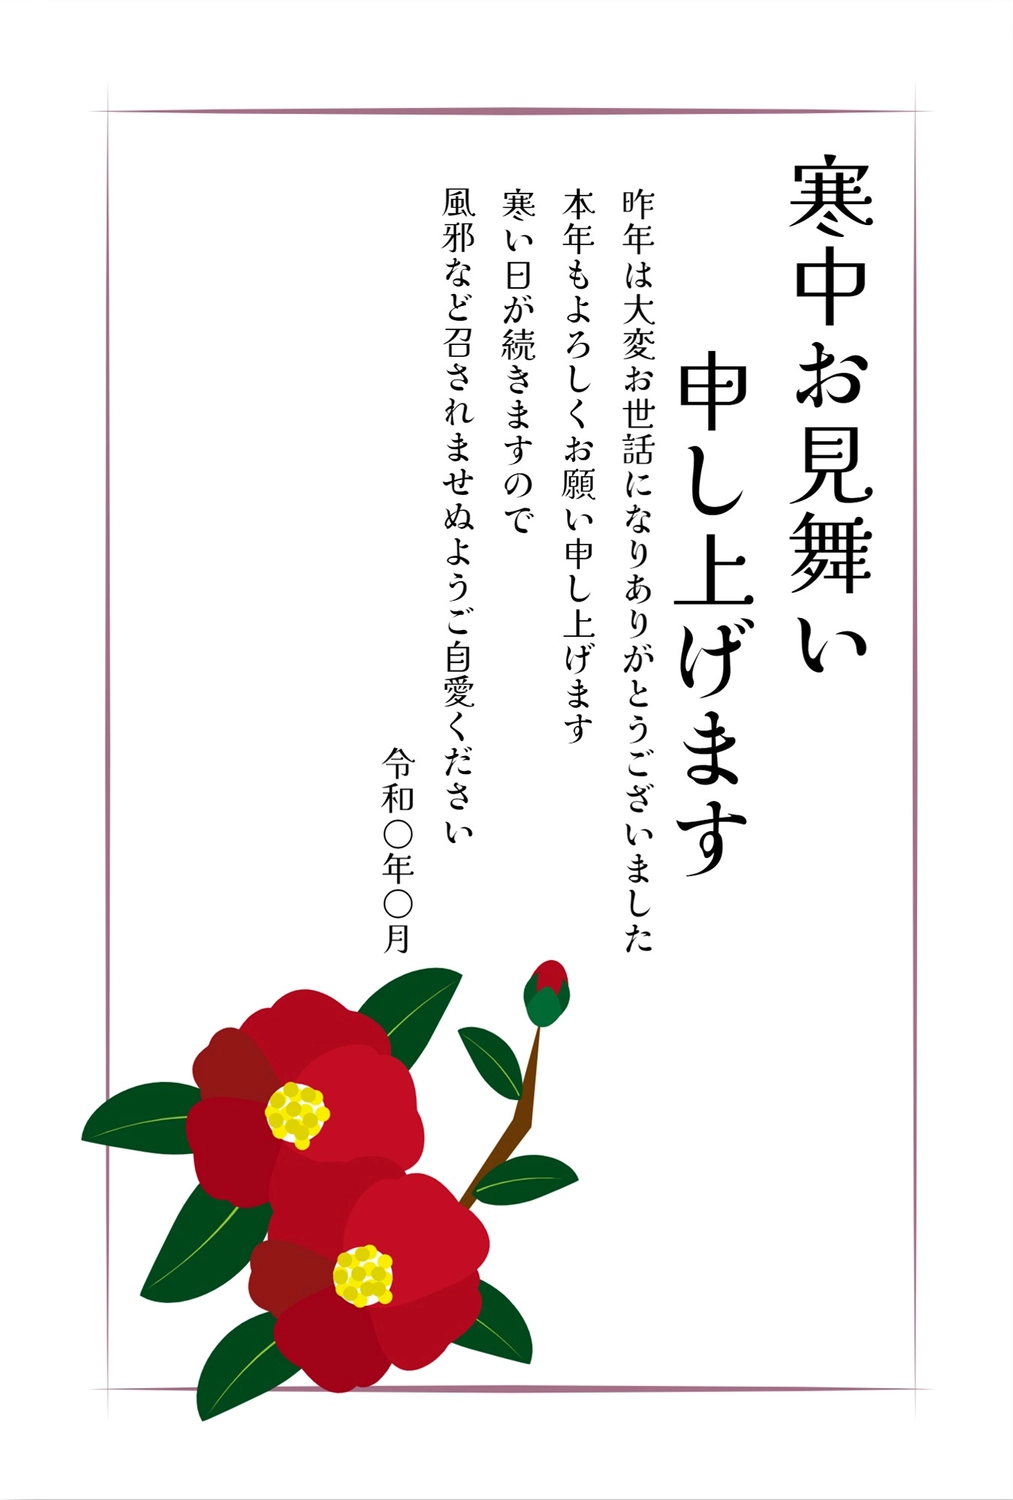 寒中見舞い　赤椿, January, Camellia japonica 'Red Camellia' (cultivar of common camellia), February, Mid-winter Greeting template